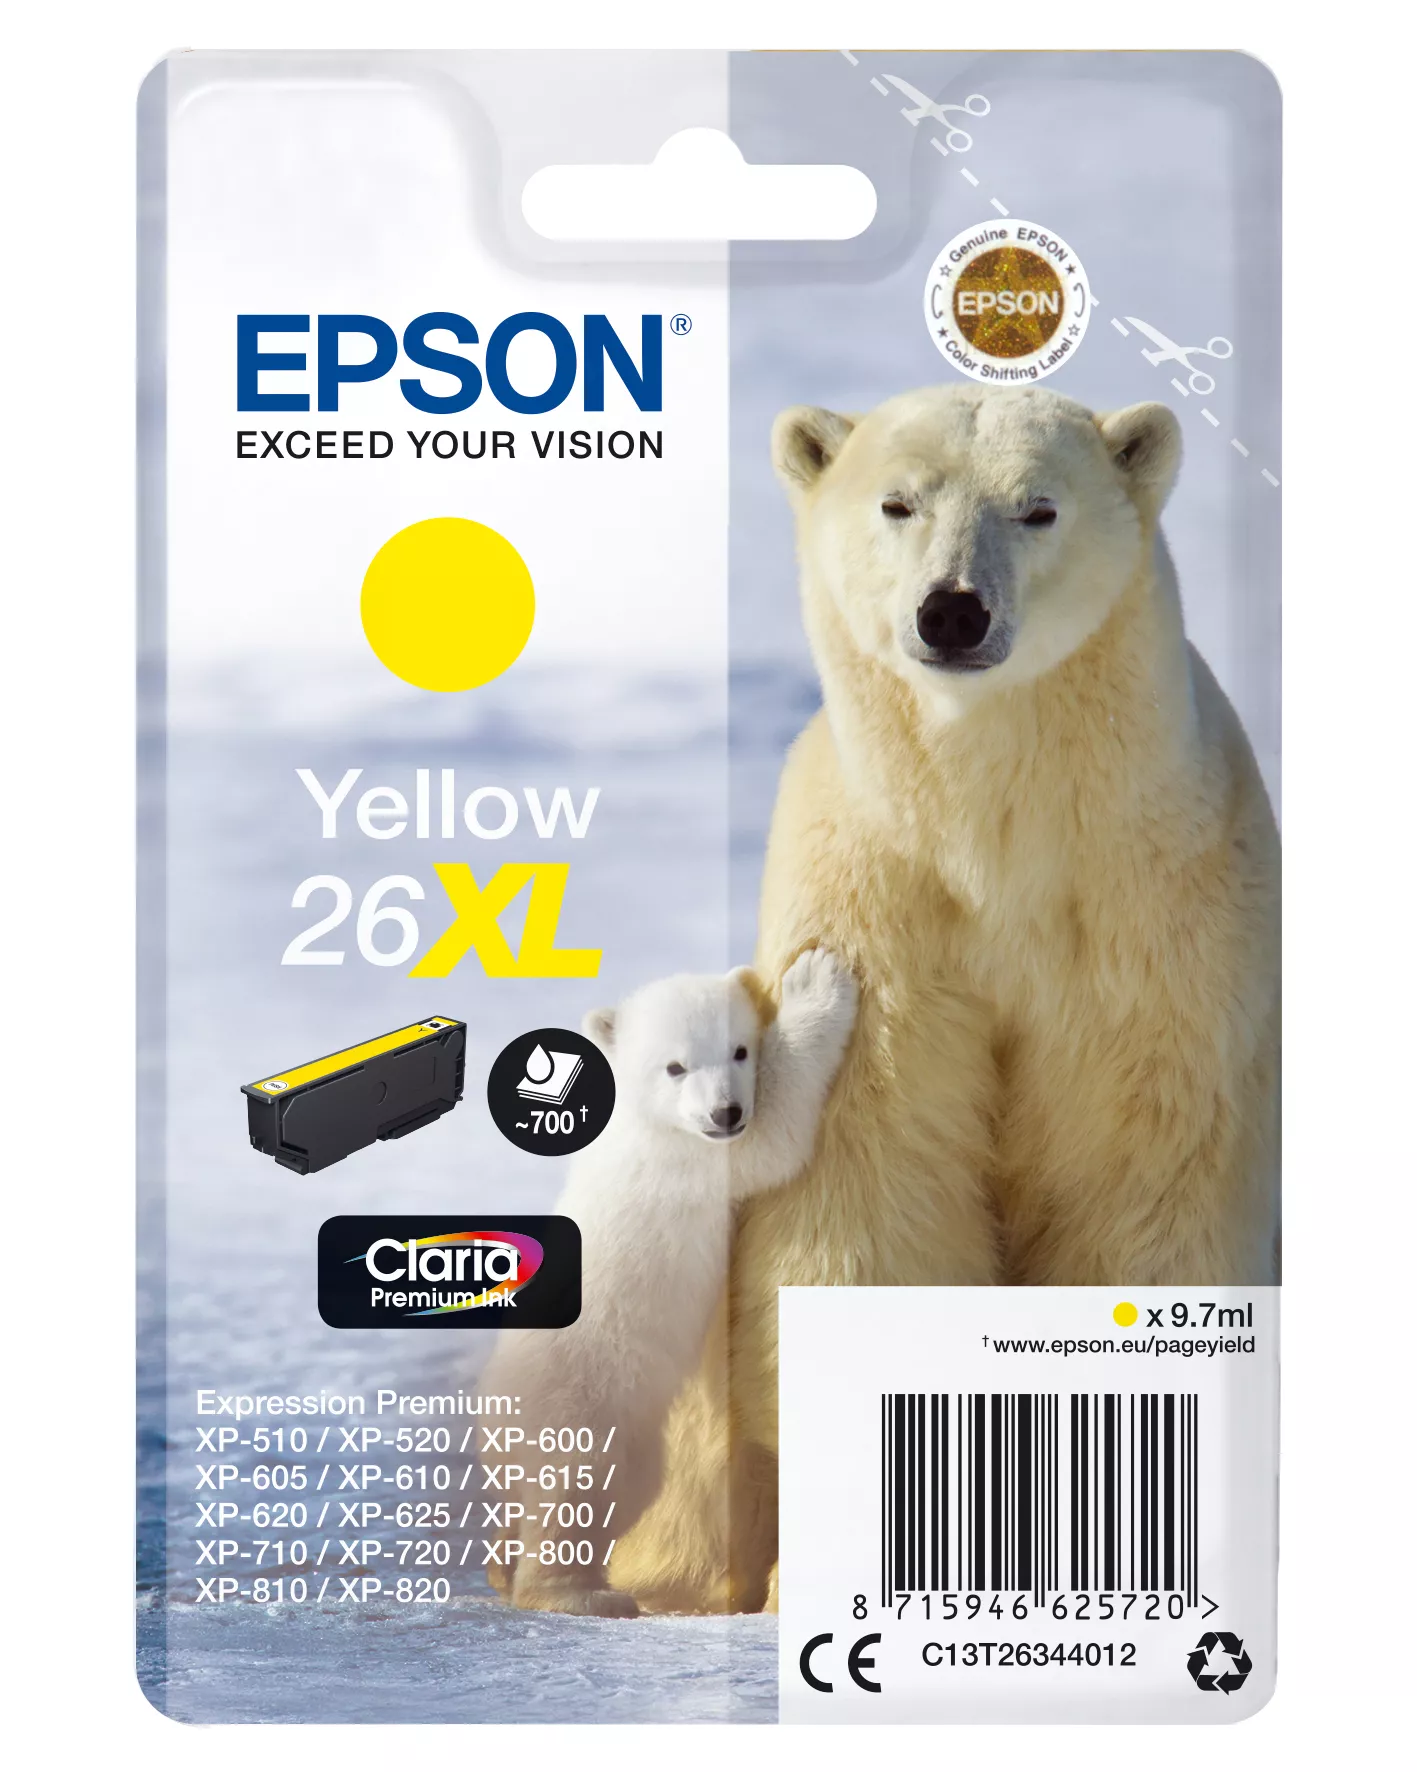 Achat EPSON 26XL cartouche dencre jaune haute capacité 9.7ml au meilleur prix